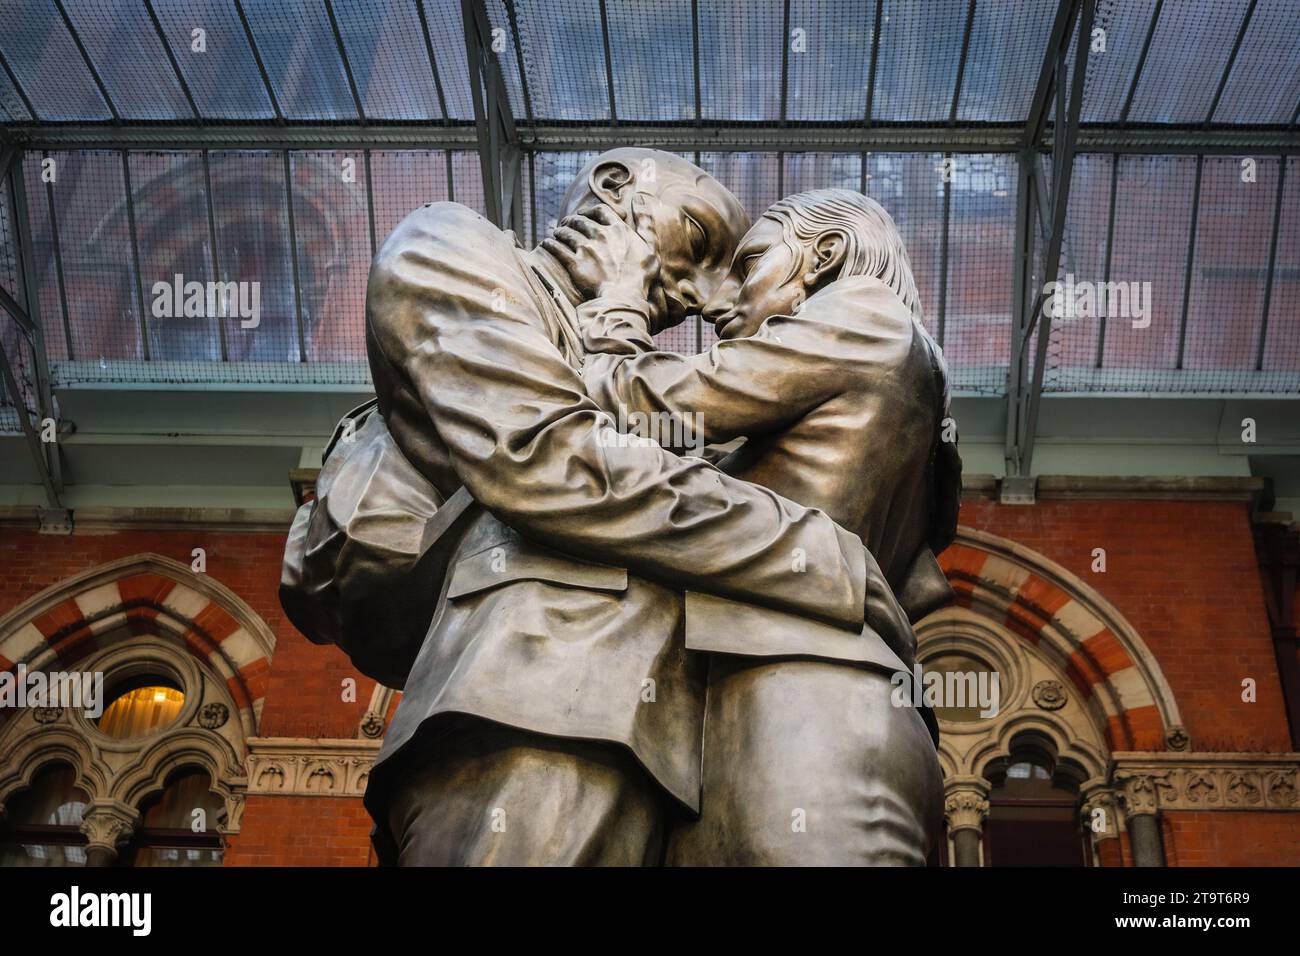 Statue en bronze de deux amoureux s'embrassant, sculpture de Paul Day, gare de St Pancras, Londres, Royaume-Uni Banque D'Images